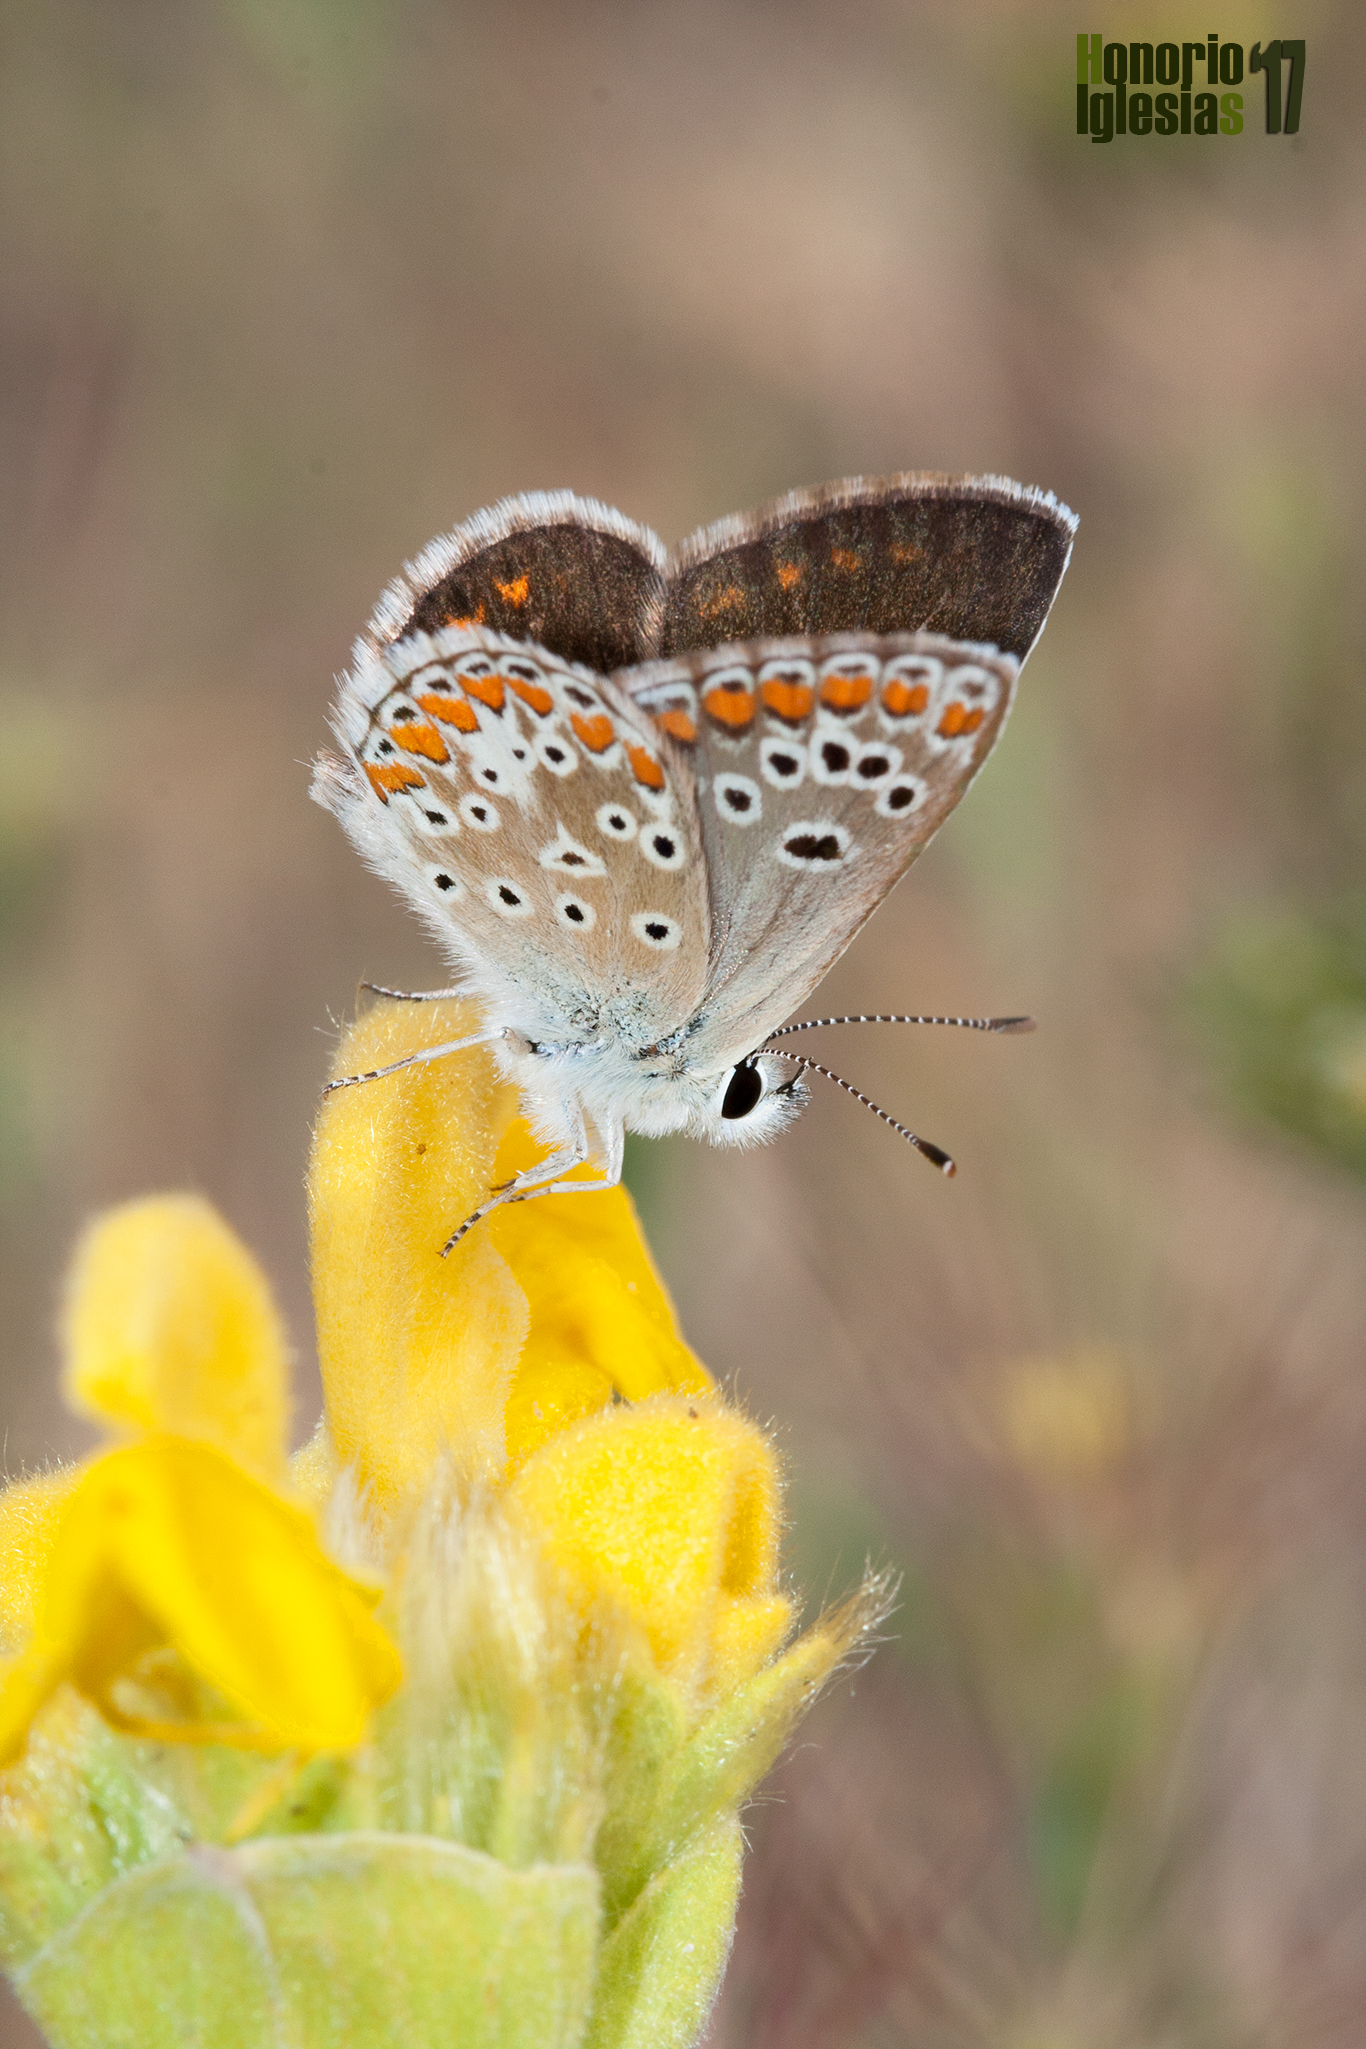 Ejemplar de mariposa morena serrana (Aricia montensis) , mostrando las lúnulas de sua alas anteriores que no alcanzan la zona costal.